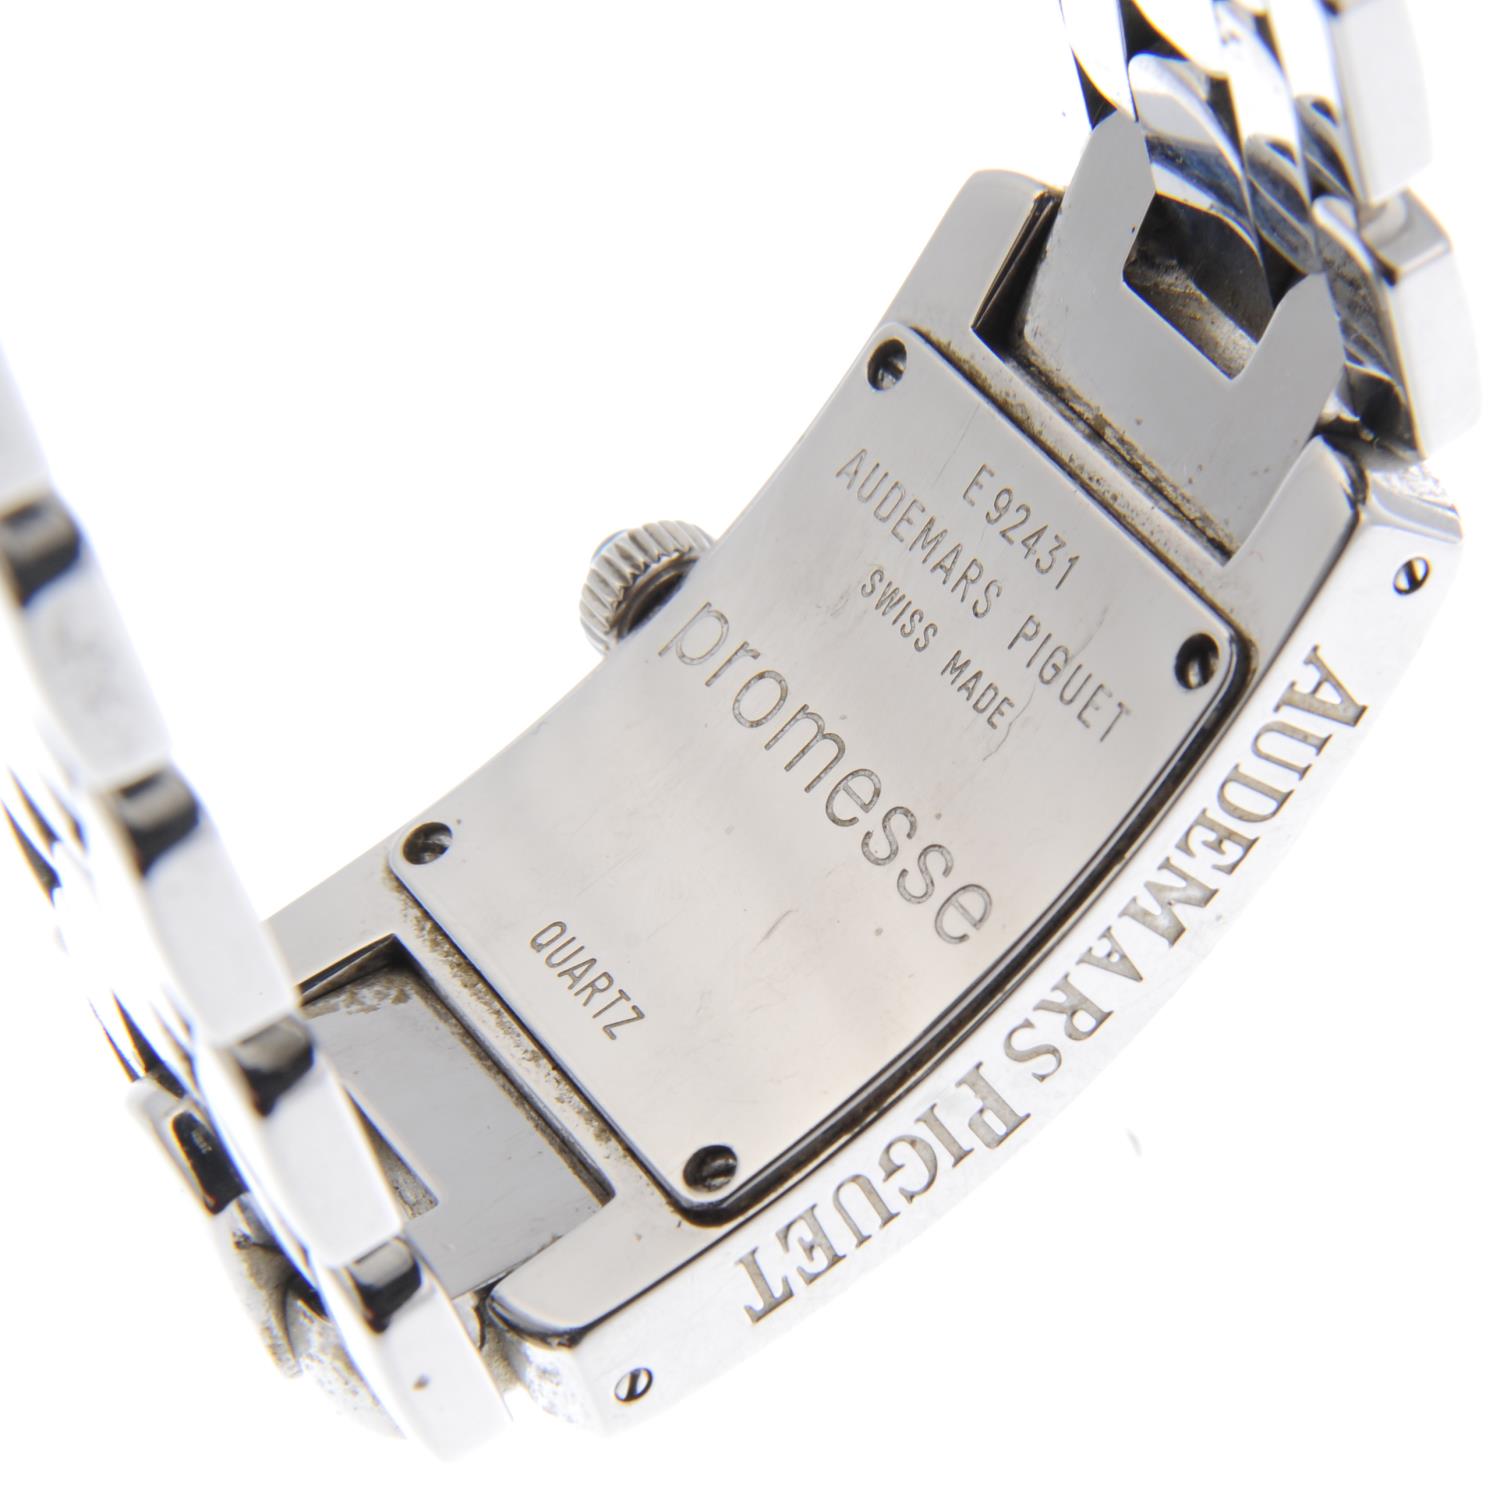 AUDEMARS PIGUET - a lady's Promesse bracelet watch. - Image 4 of 4